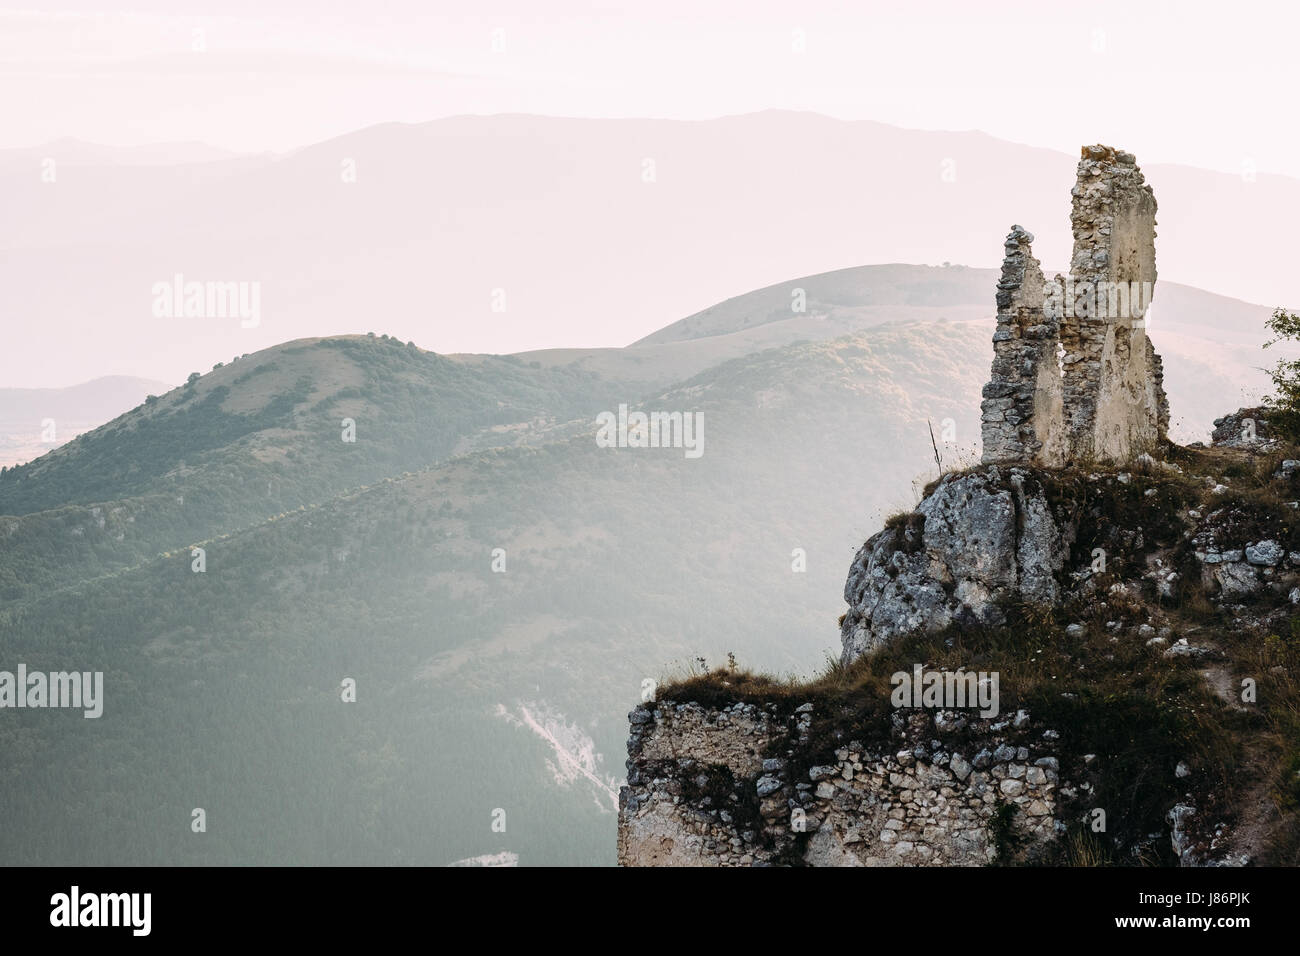 The ruins of the castle of Rocca Calascio, Abruzzo, Italy Stock Photo